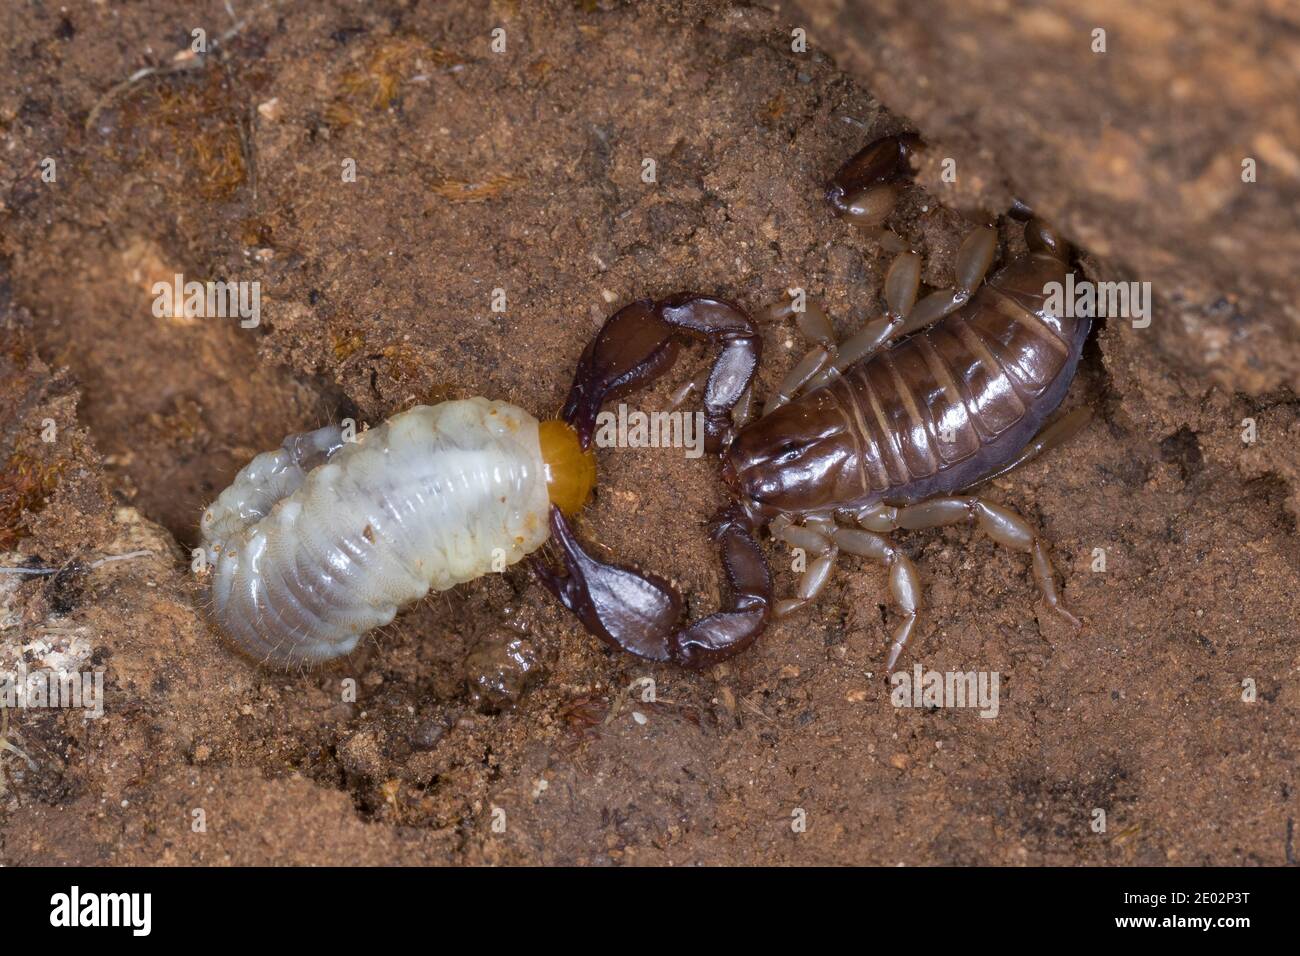 Skorpion, mit Beute, hat einen Engelling, Käferlarve erbeutet, Euscorpius spec., Euscorpius, scorpion, Kroatien, Croatia Stock Photo